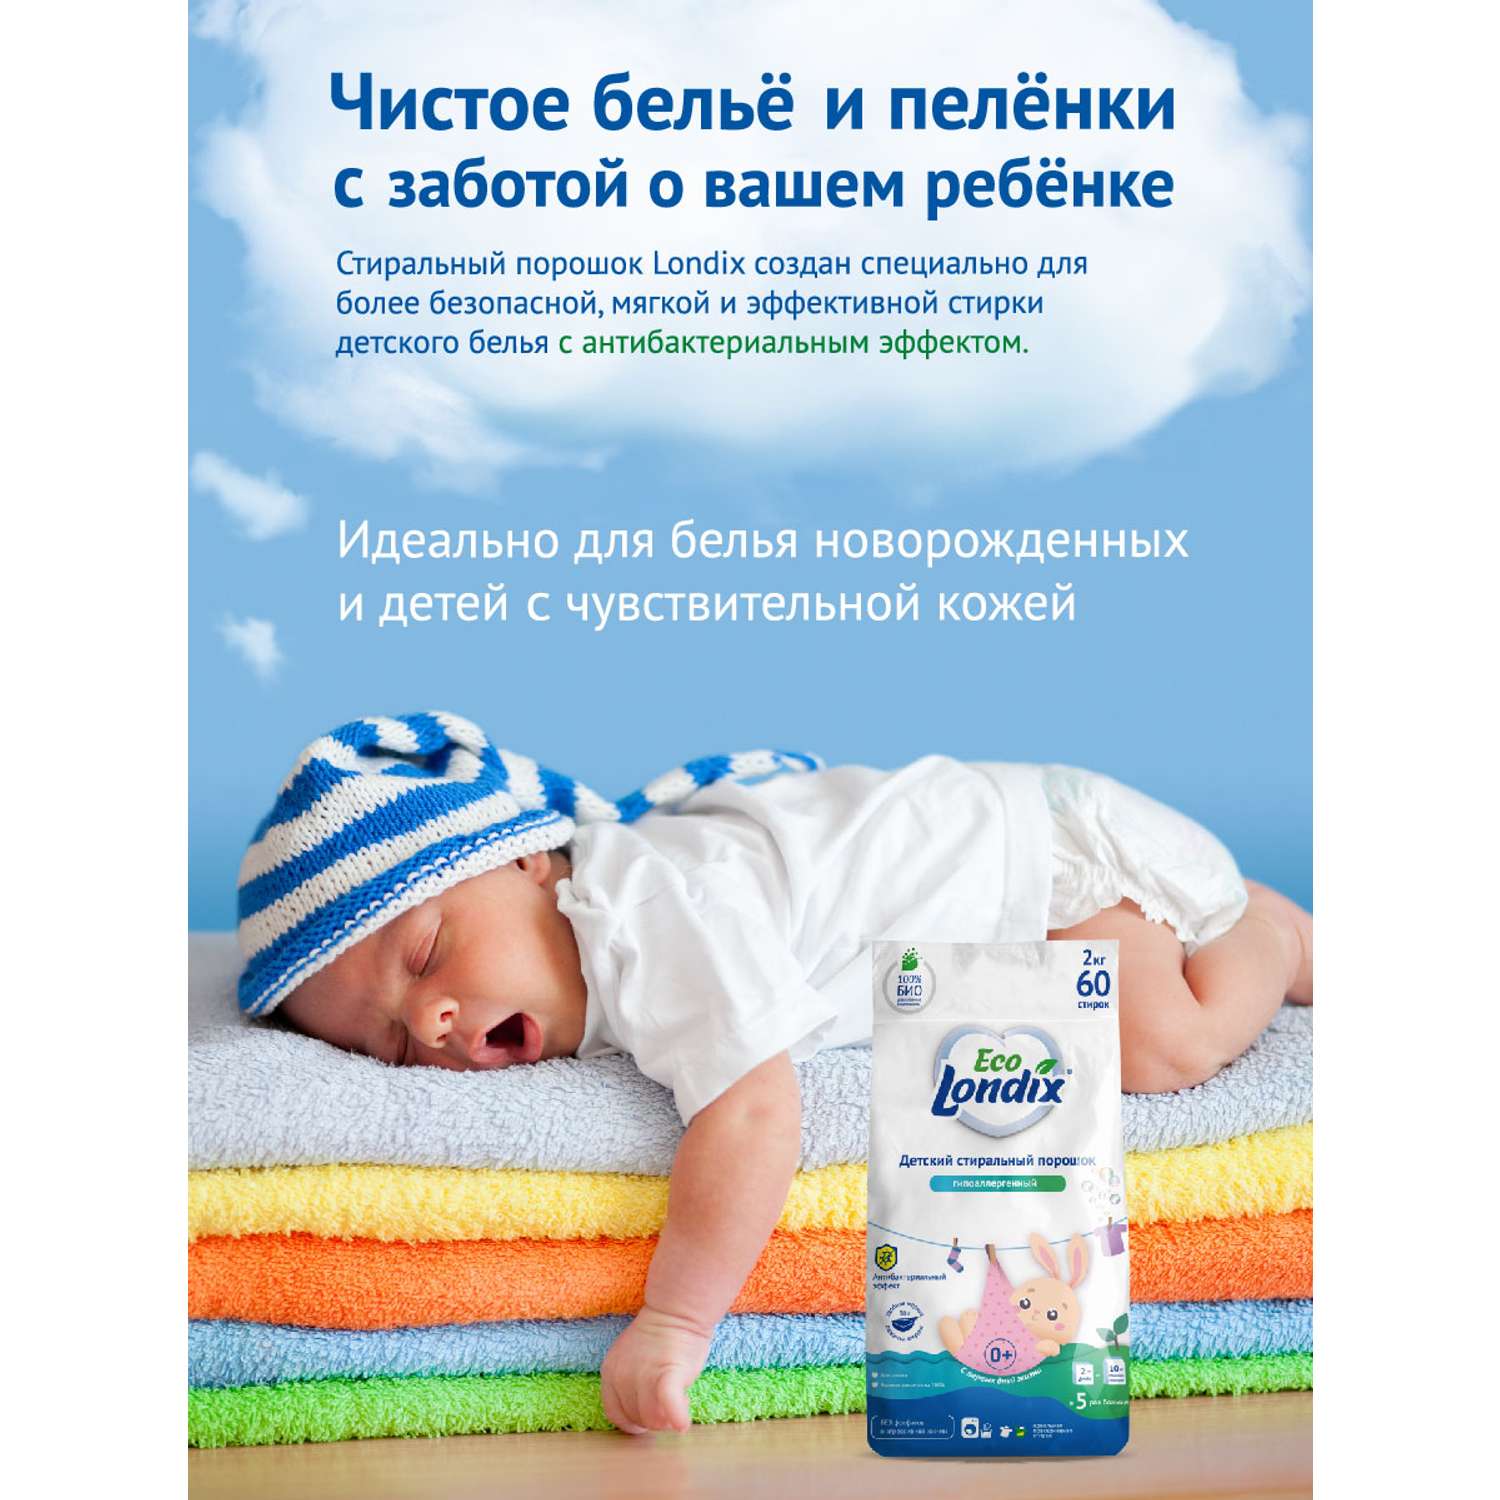 Детский стиральный порошок Londix гипоаллергенный без запаха концентрат 60 стирок 2 кг - фото 2